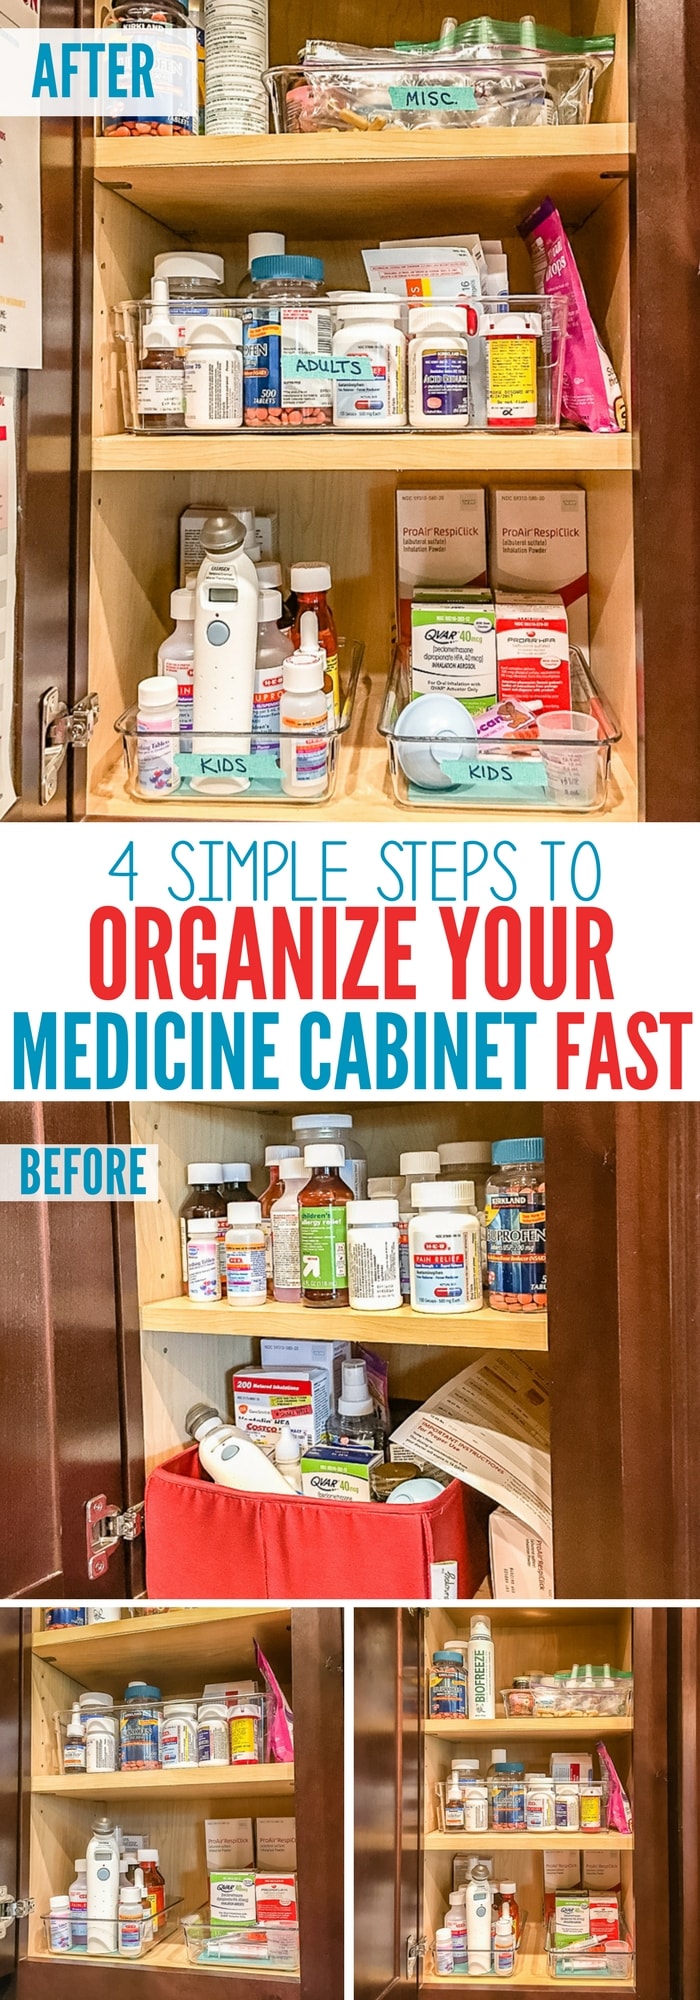 před a po, jak organizovat své lékárničce rychle